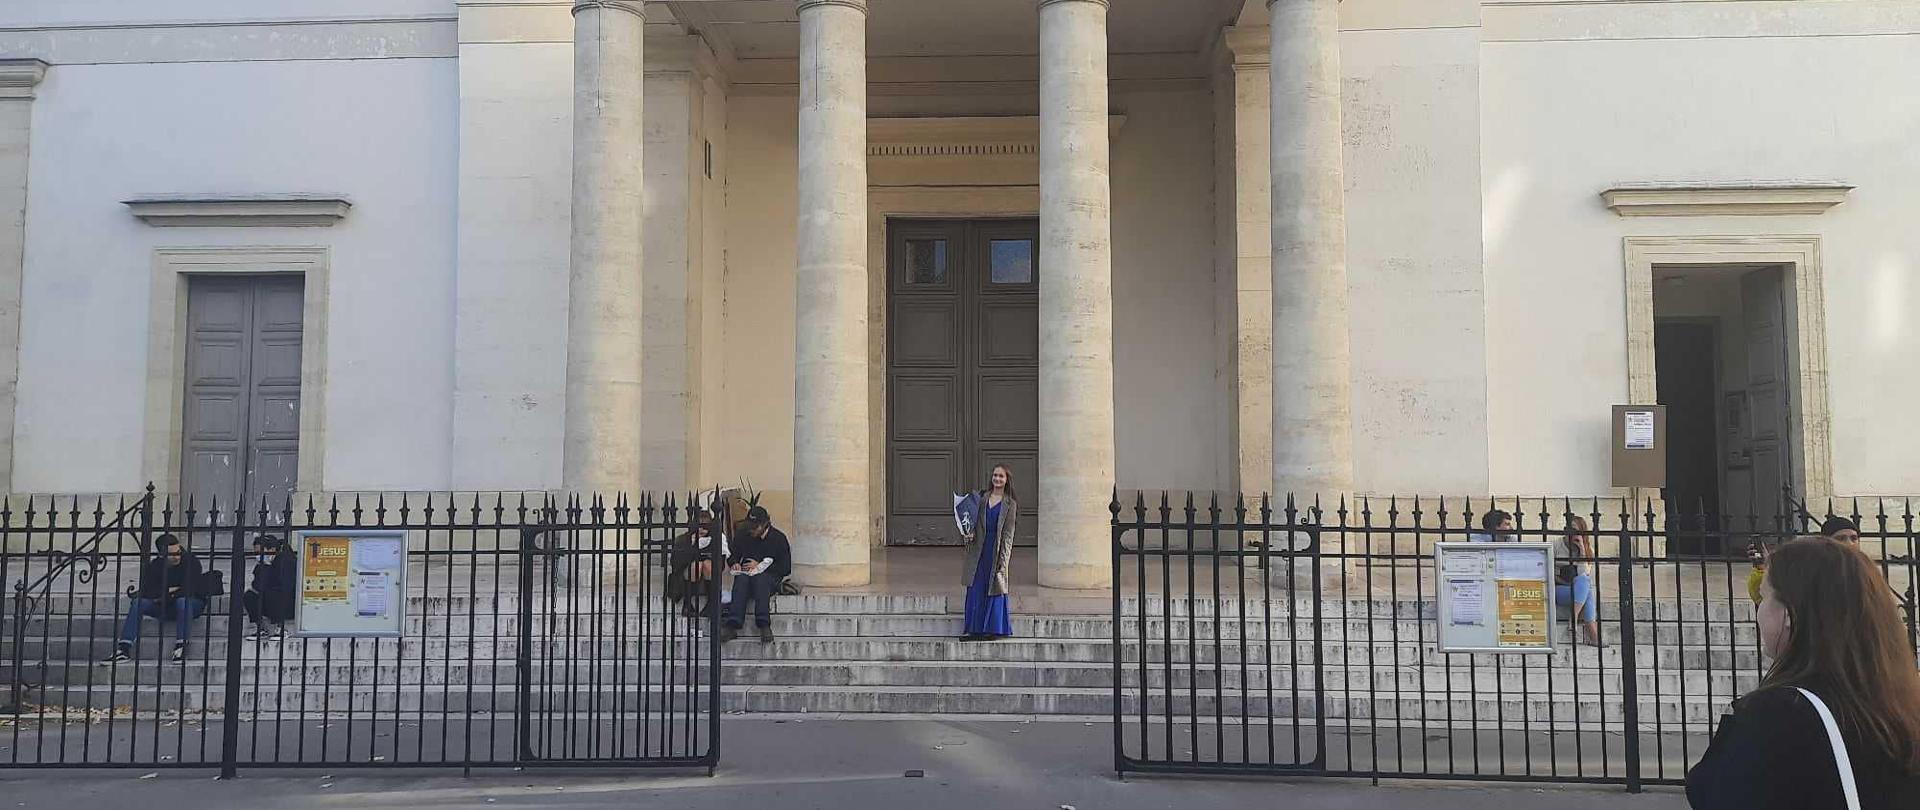 Antonina stoi na schodach przed kościołem w wieczorowej sukni.